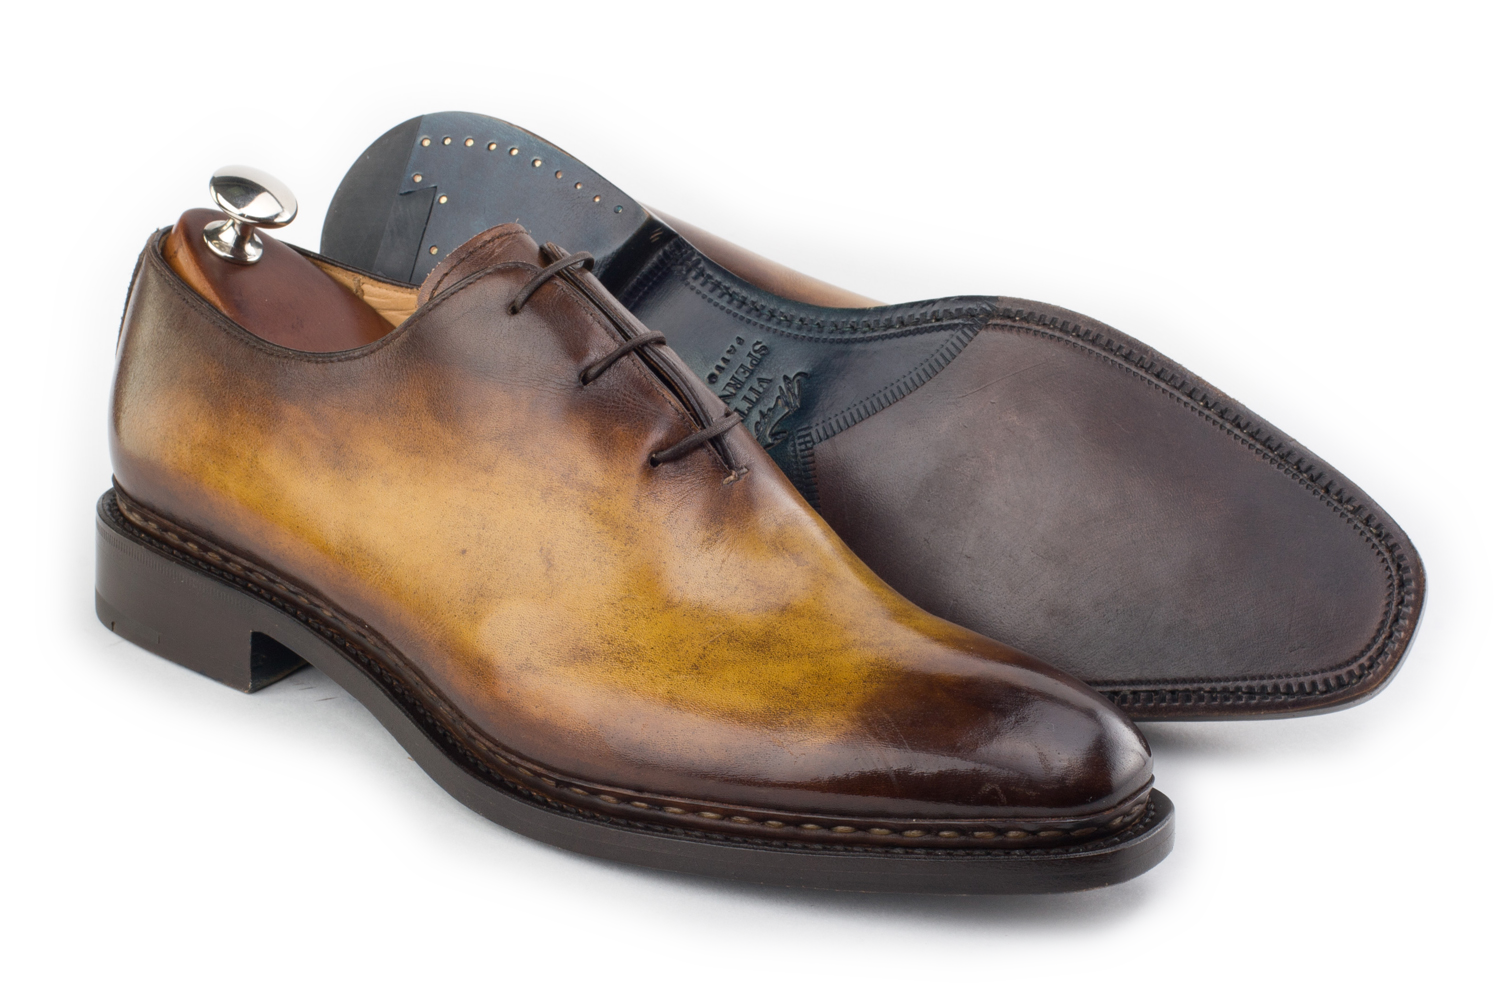 Rr collection каталог. Vittorio Spernanzoni кроссовки. Эксклюзивные мужские ботинки. Туфли мужские. Итальянская мужская обувь бренды.